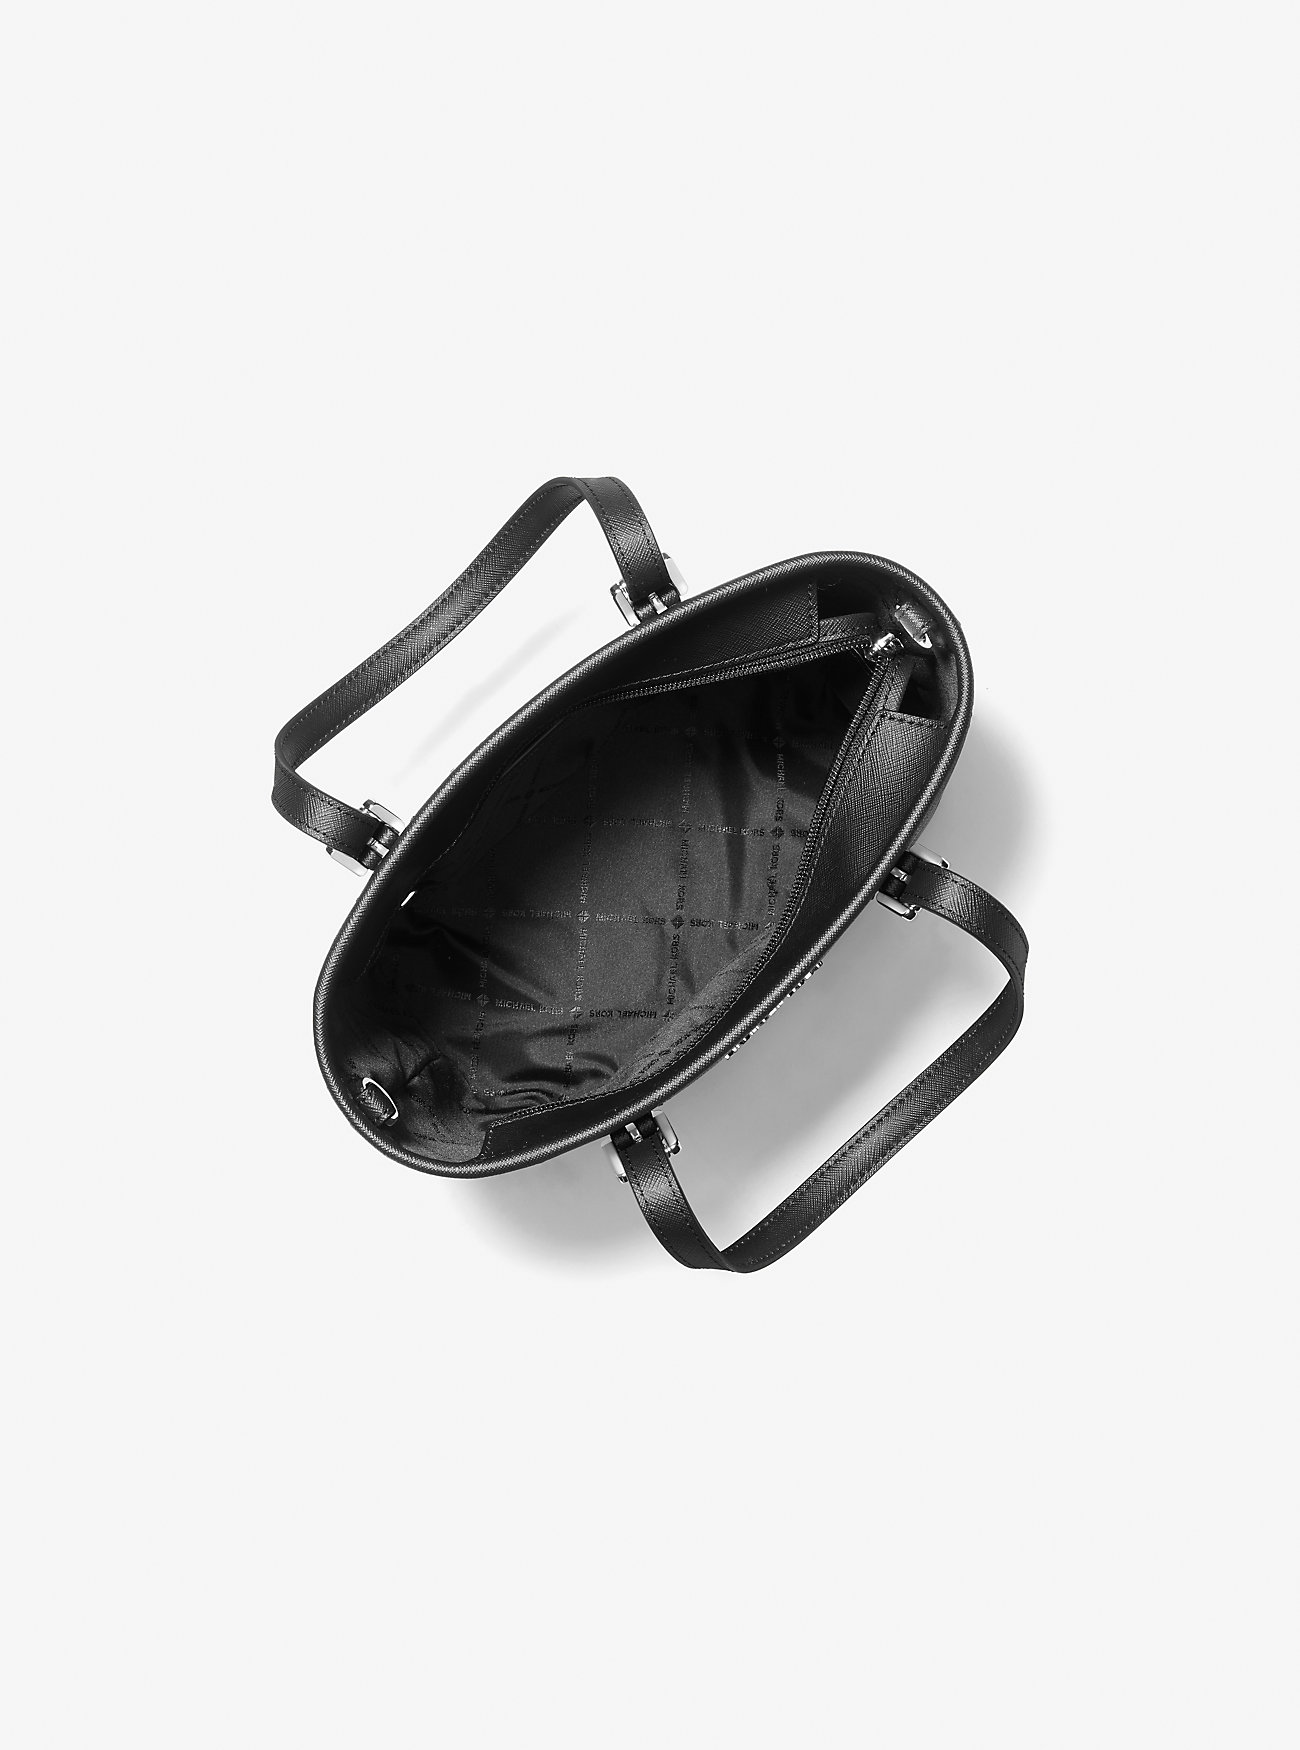 Сумка тоут MICHAEL KORS Класическая женская черная сумка с принтом Лого и серебряной фурнитурой Michael Kors Logo Jet Set Travel Extra-Small Logo Top-Zip Tote Bag Black Silver 35T9STVT0B